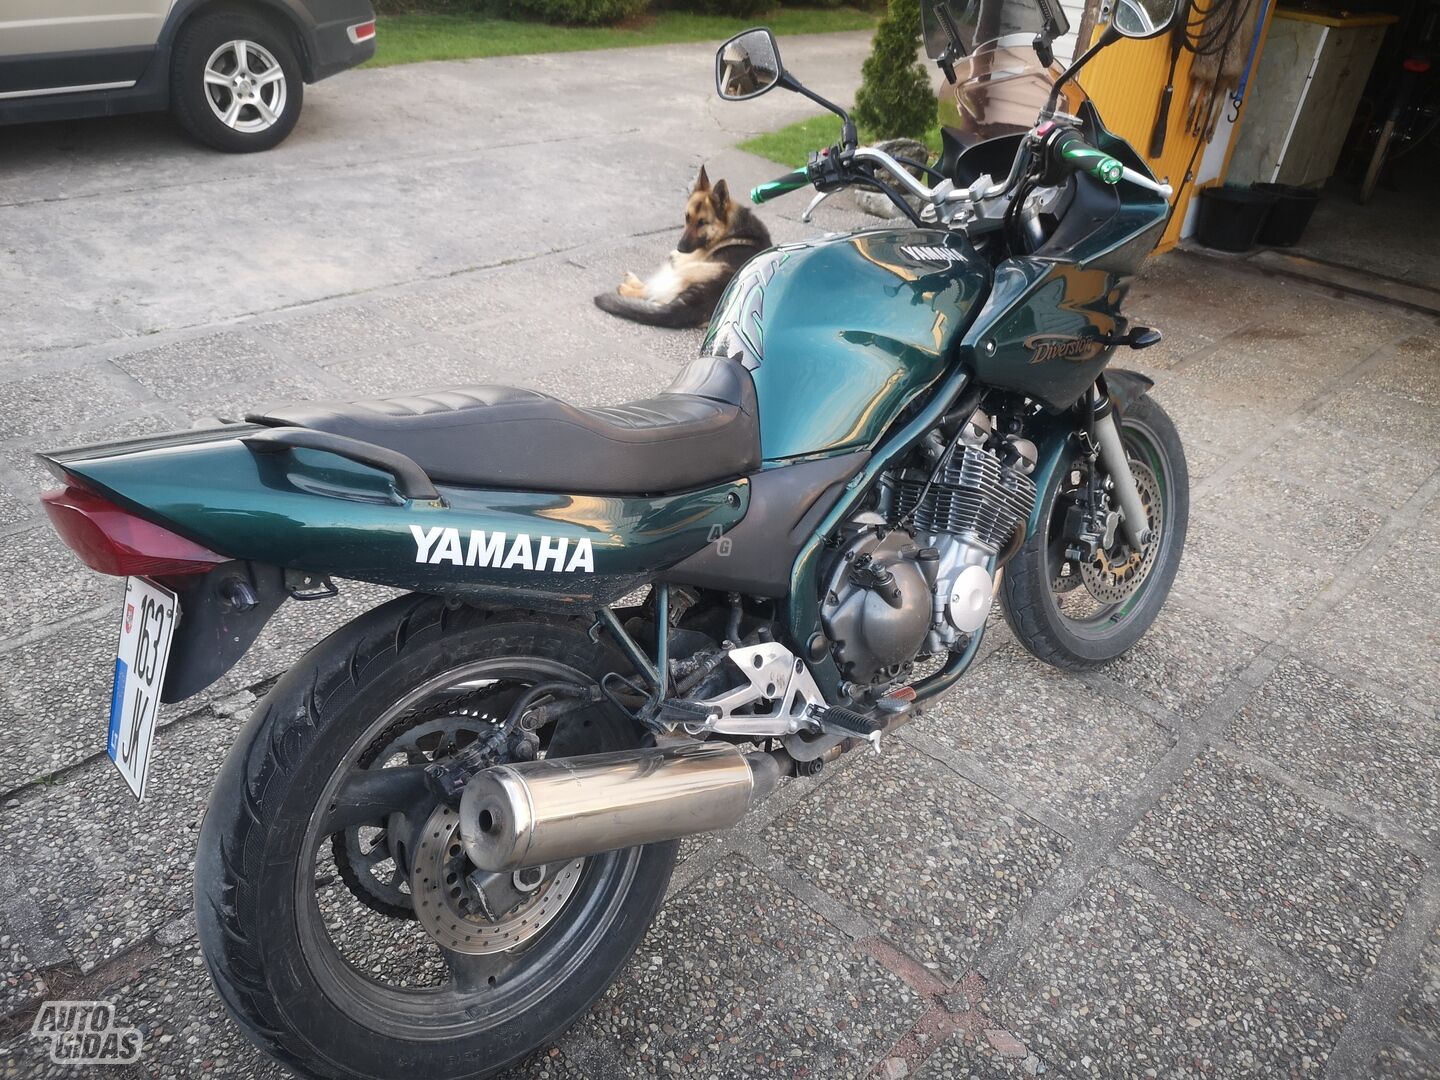 Yamaha XJ 2000 y Classical / Streetbike motorcycle